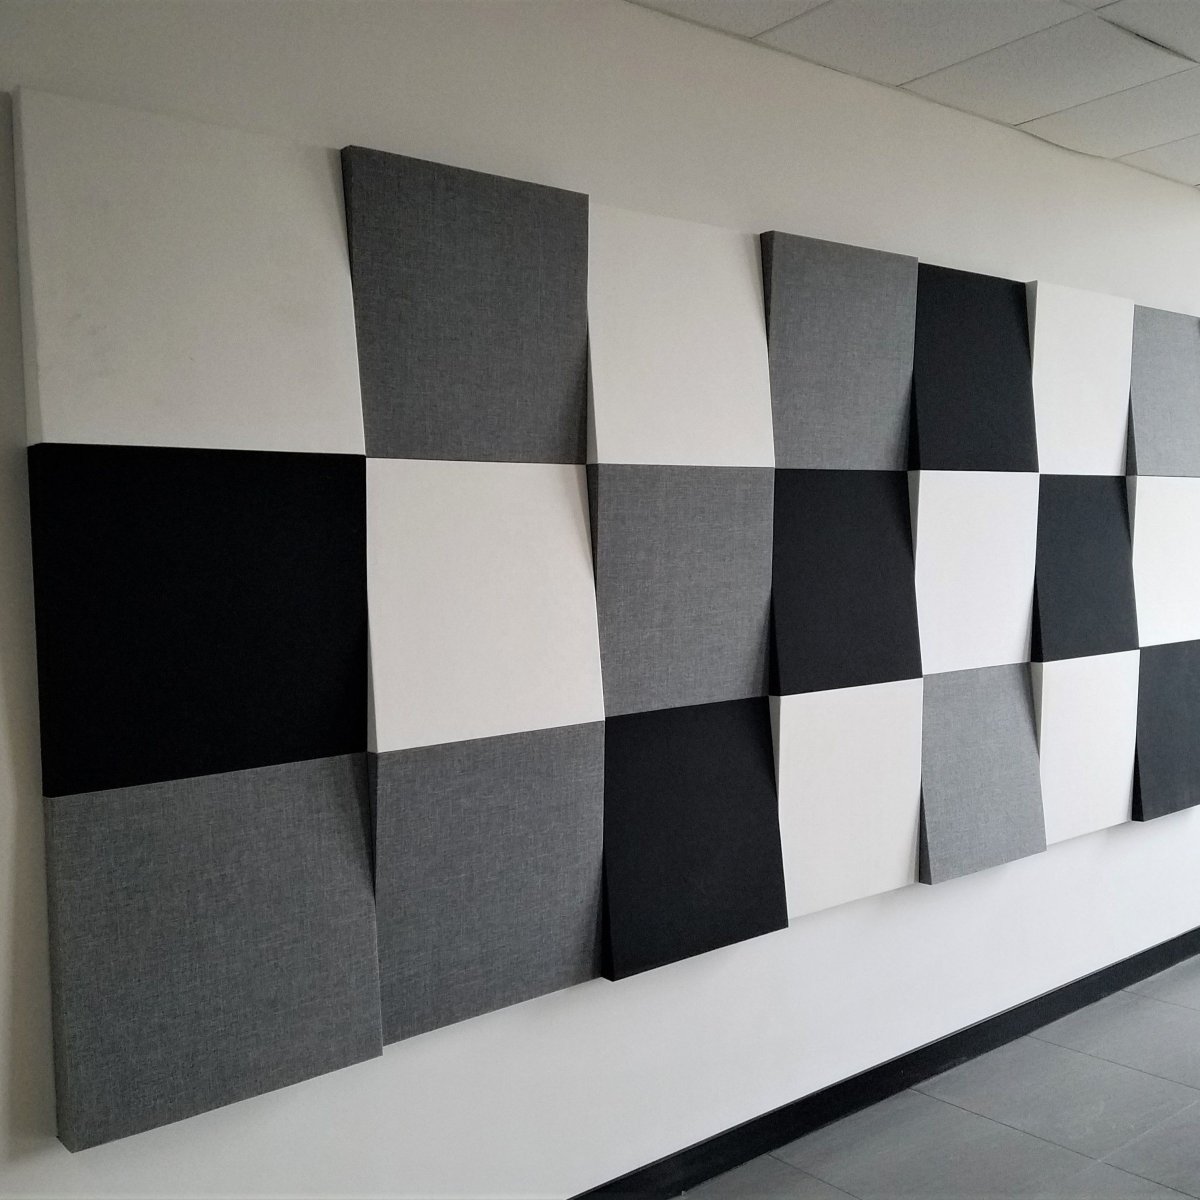 Декоративные шумоизоляционные панели для стен - 57 фото